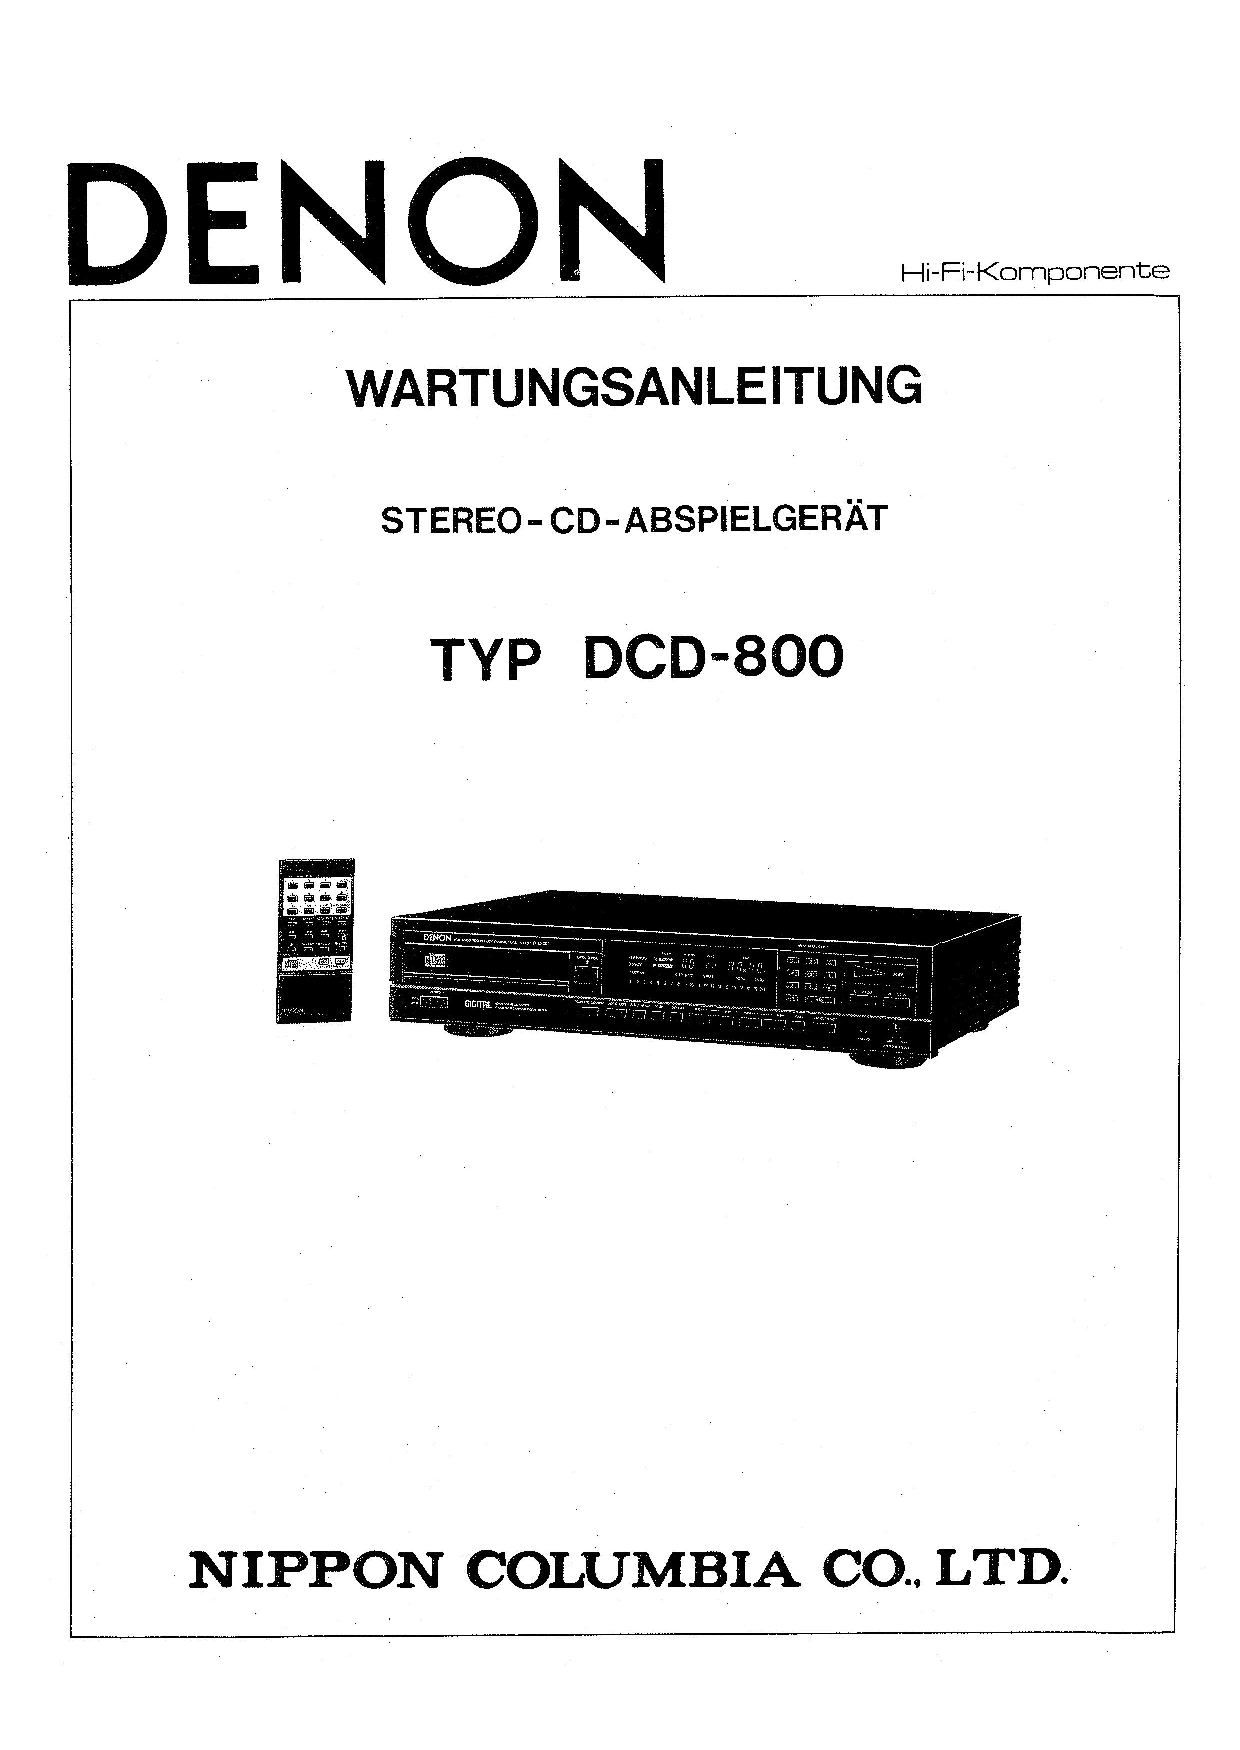 Denon DCD-800 Service Manual